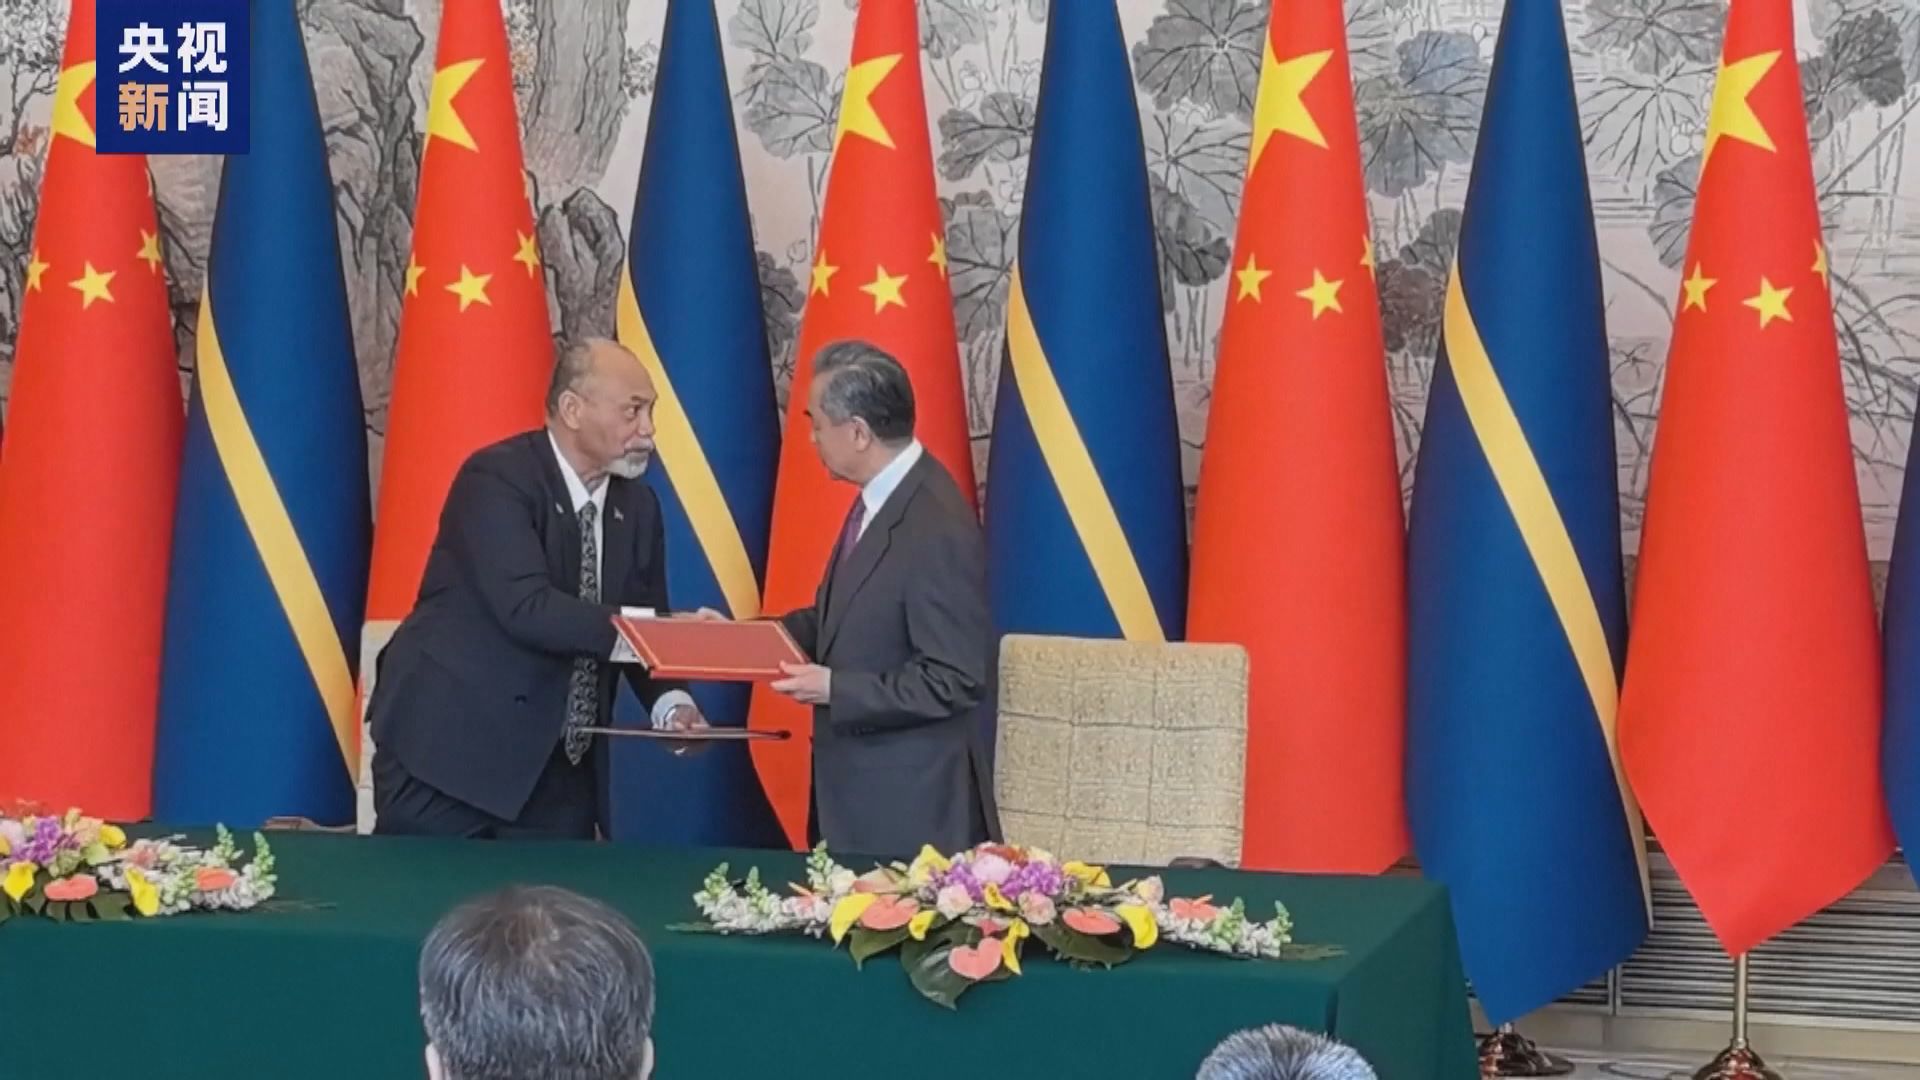 中國和瑙魯正式恢復外交關係 兩國恢復大使級外交關係